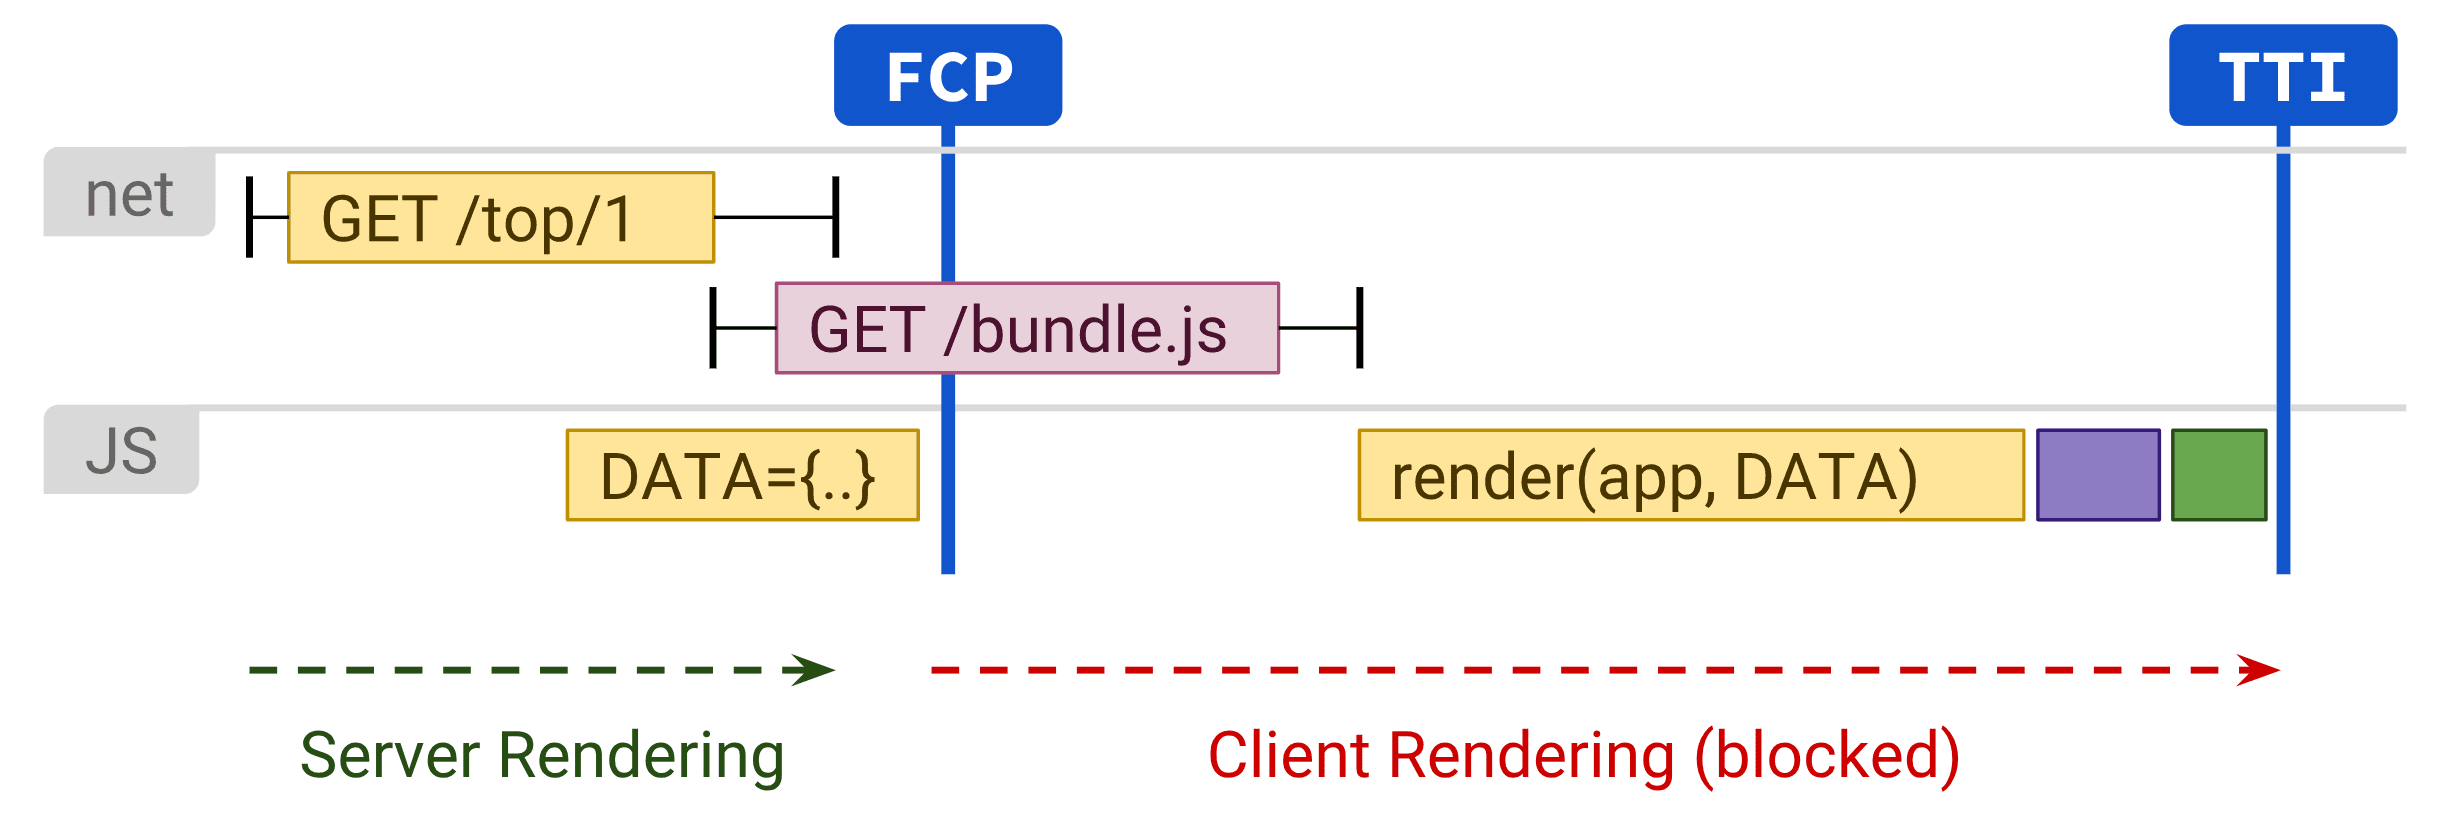 Diagrama en el que se muestra la renderización del cliente que afecta negativamente al TTI.